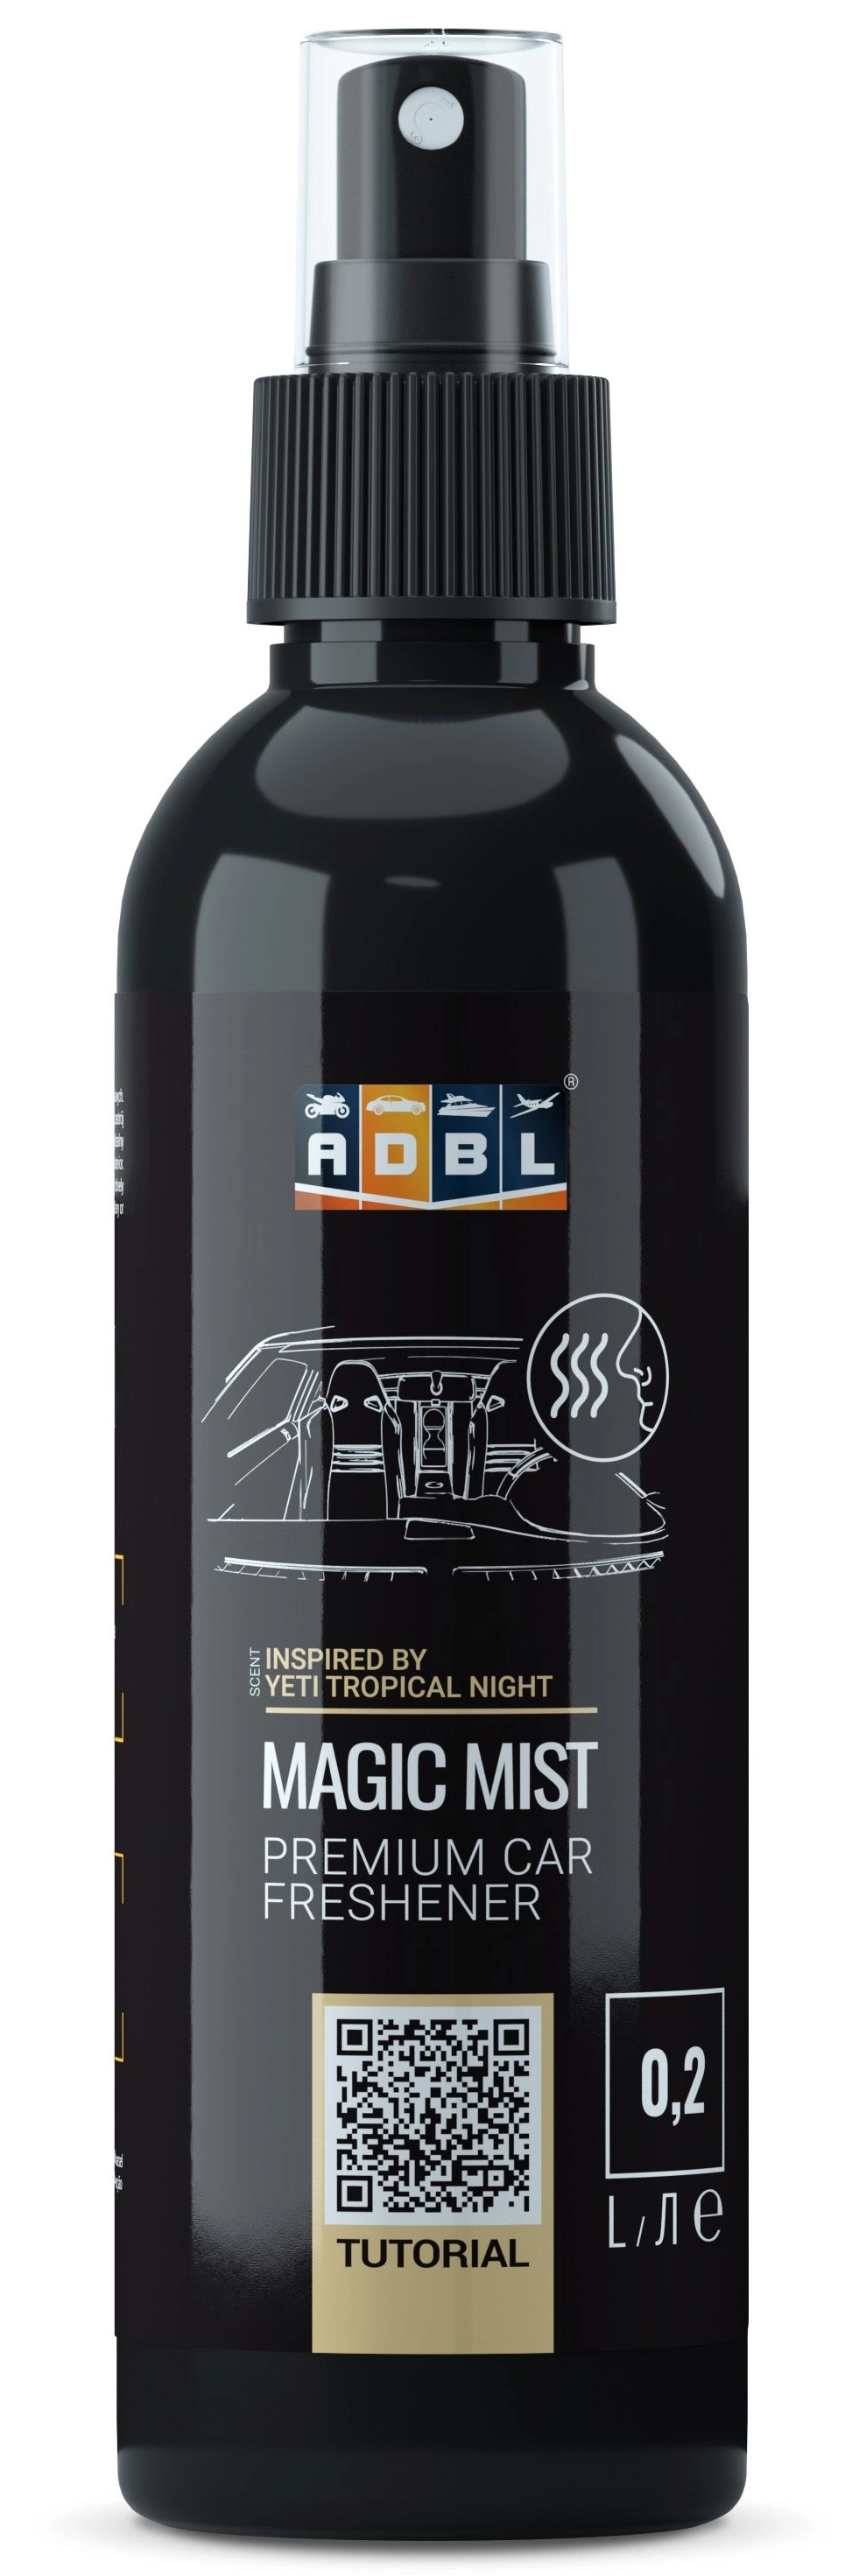 Image of ADBL Magic Mist TN – odświeżacz powietrza inspirowany zapachem Yeti Tropical Night 200ml